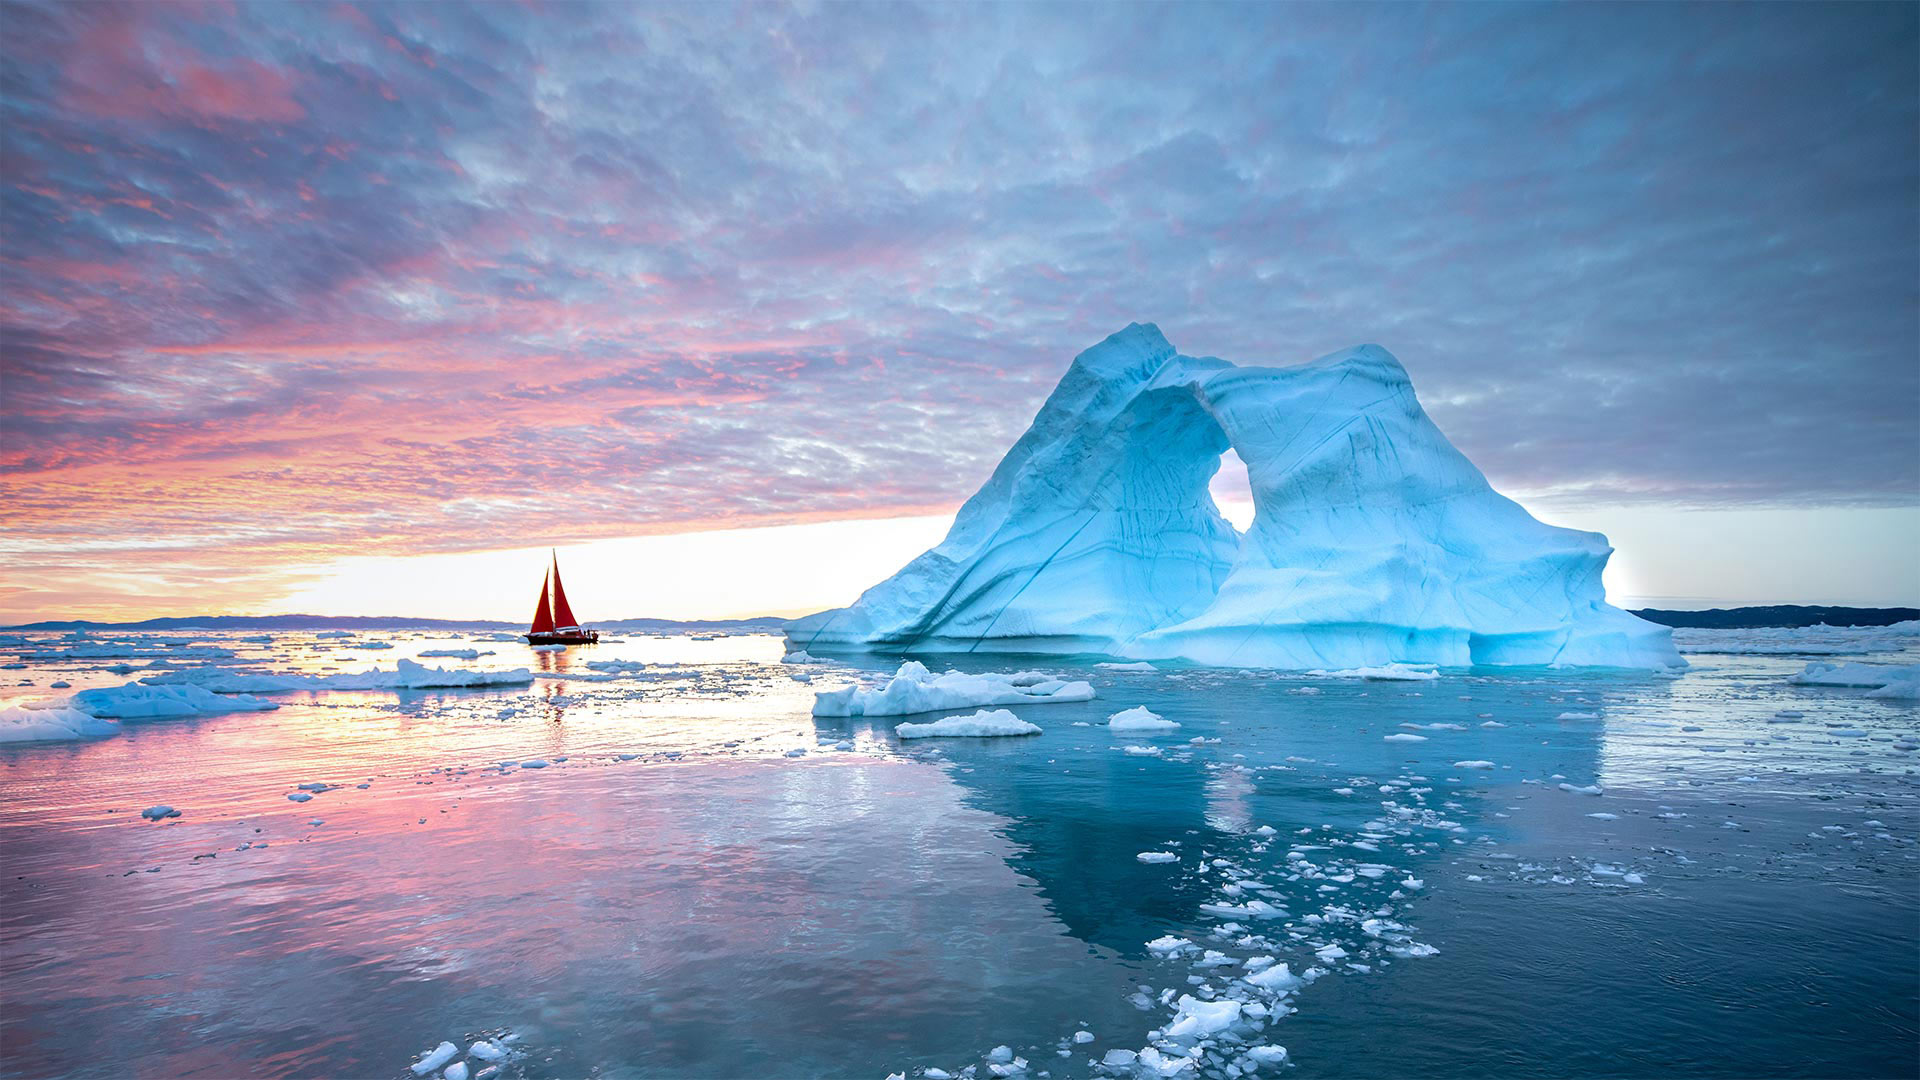 Disko Bay, Ilulissat, Greenland - Kertu/Shutterstock)